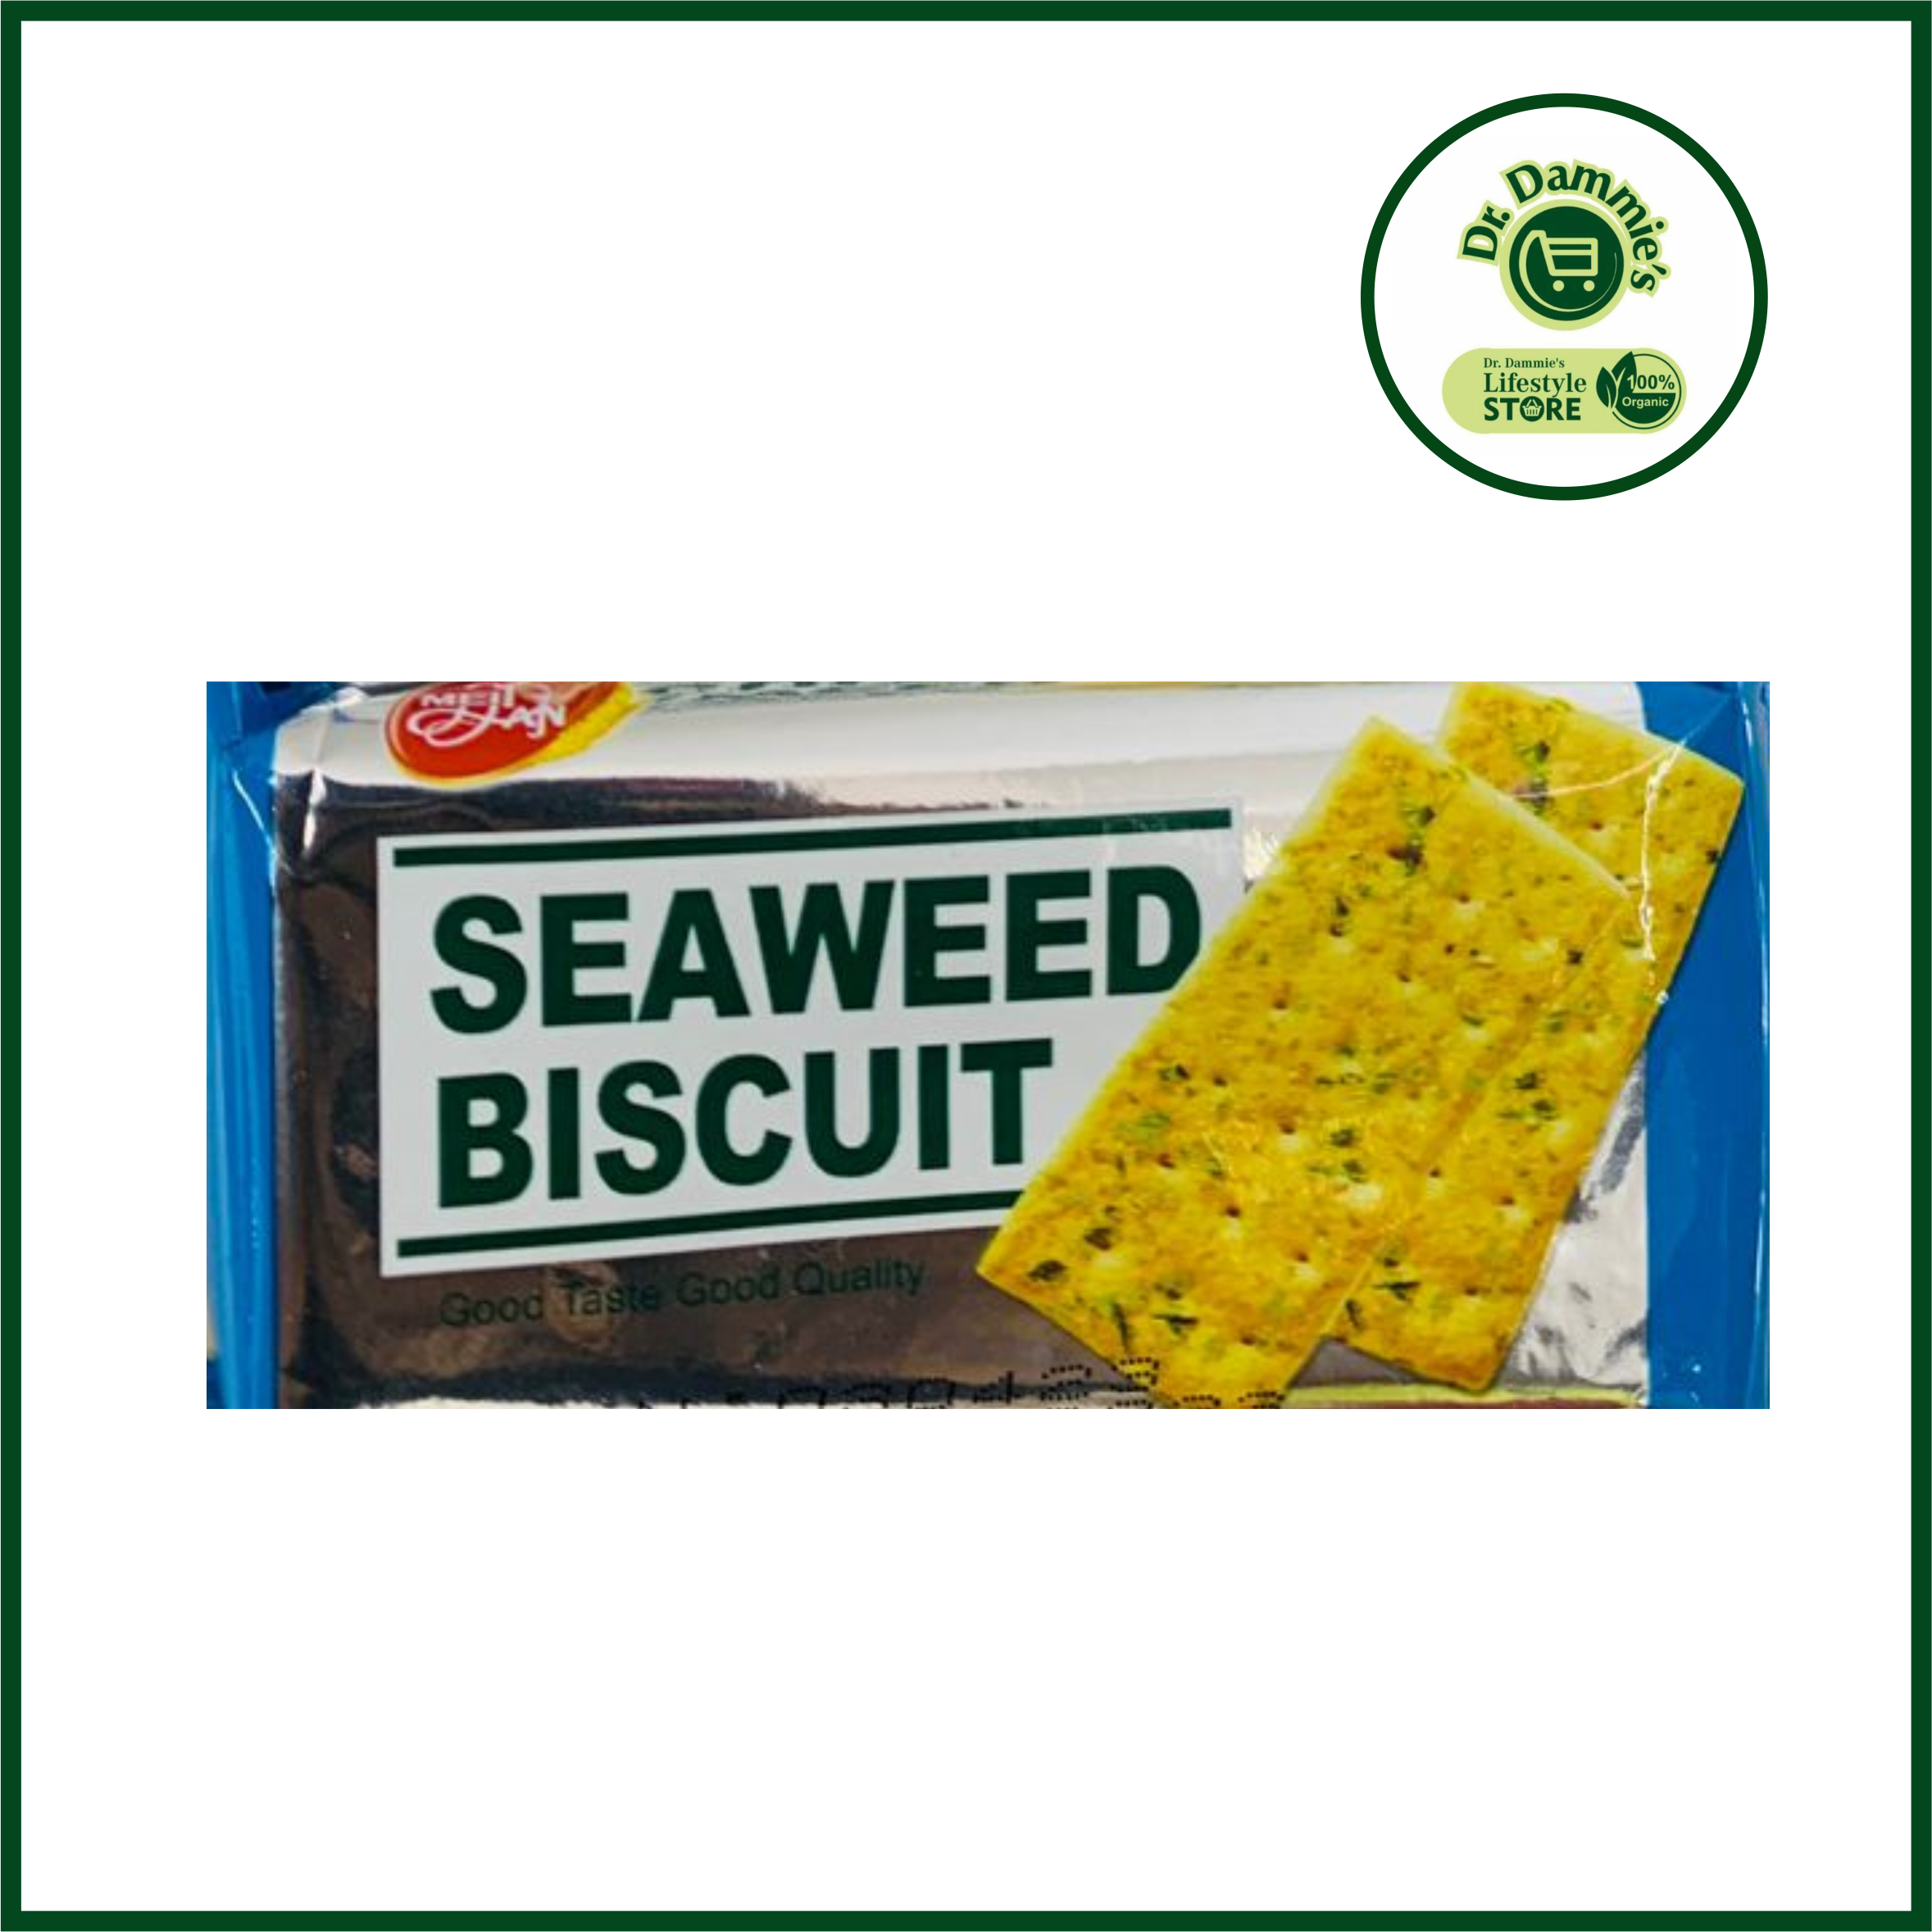 Seaweed biscuit